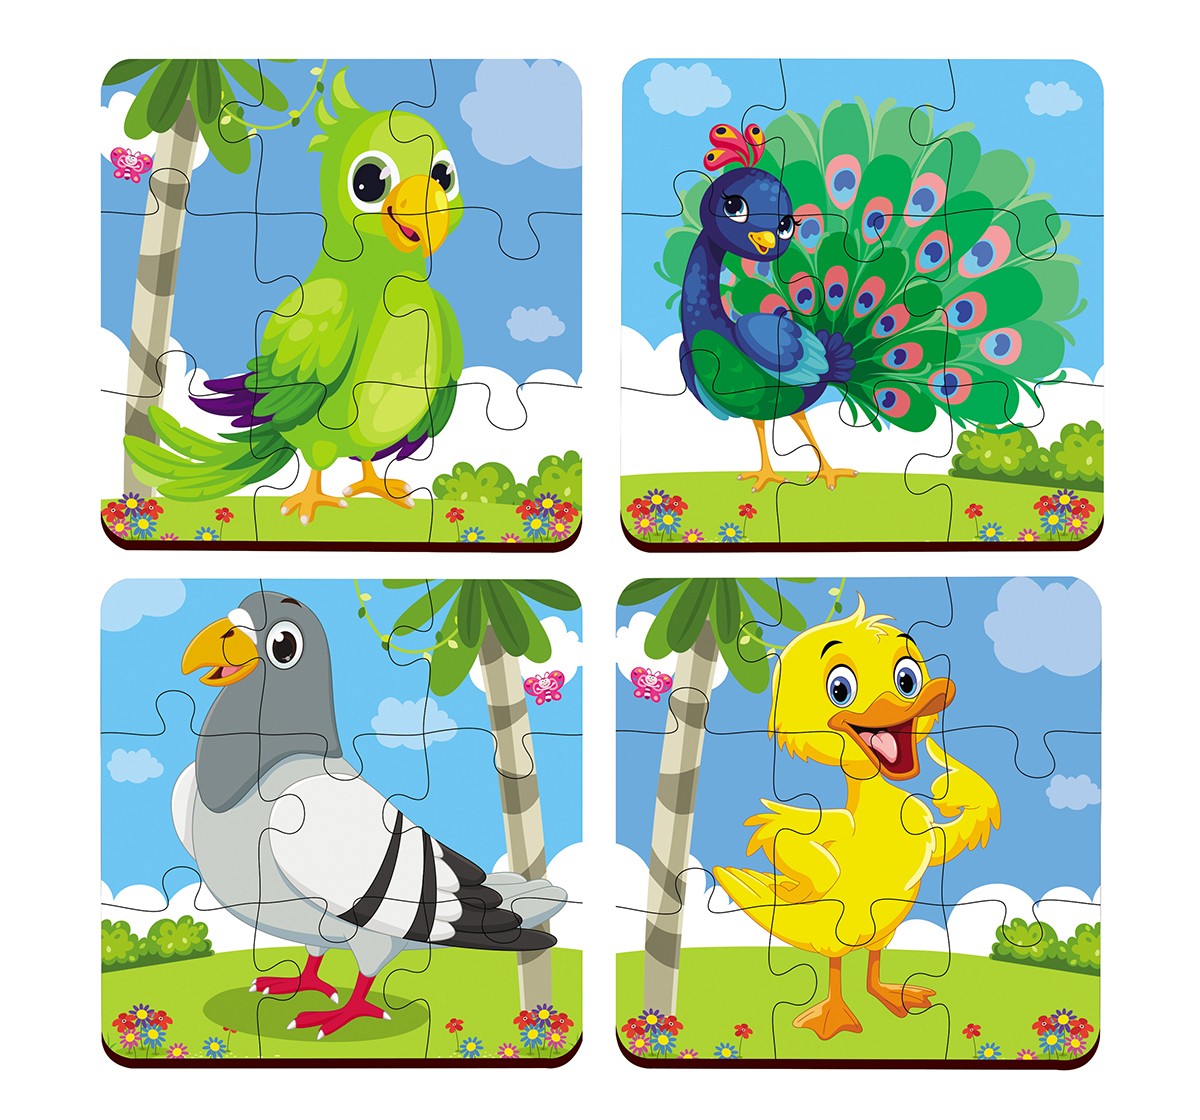 Webby 4in1 Wooden Birds Puzzle 36pcs,  3Y+ (Multicolour)